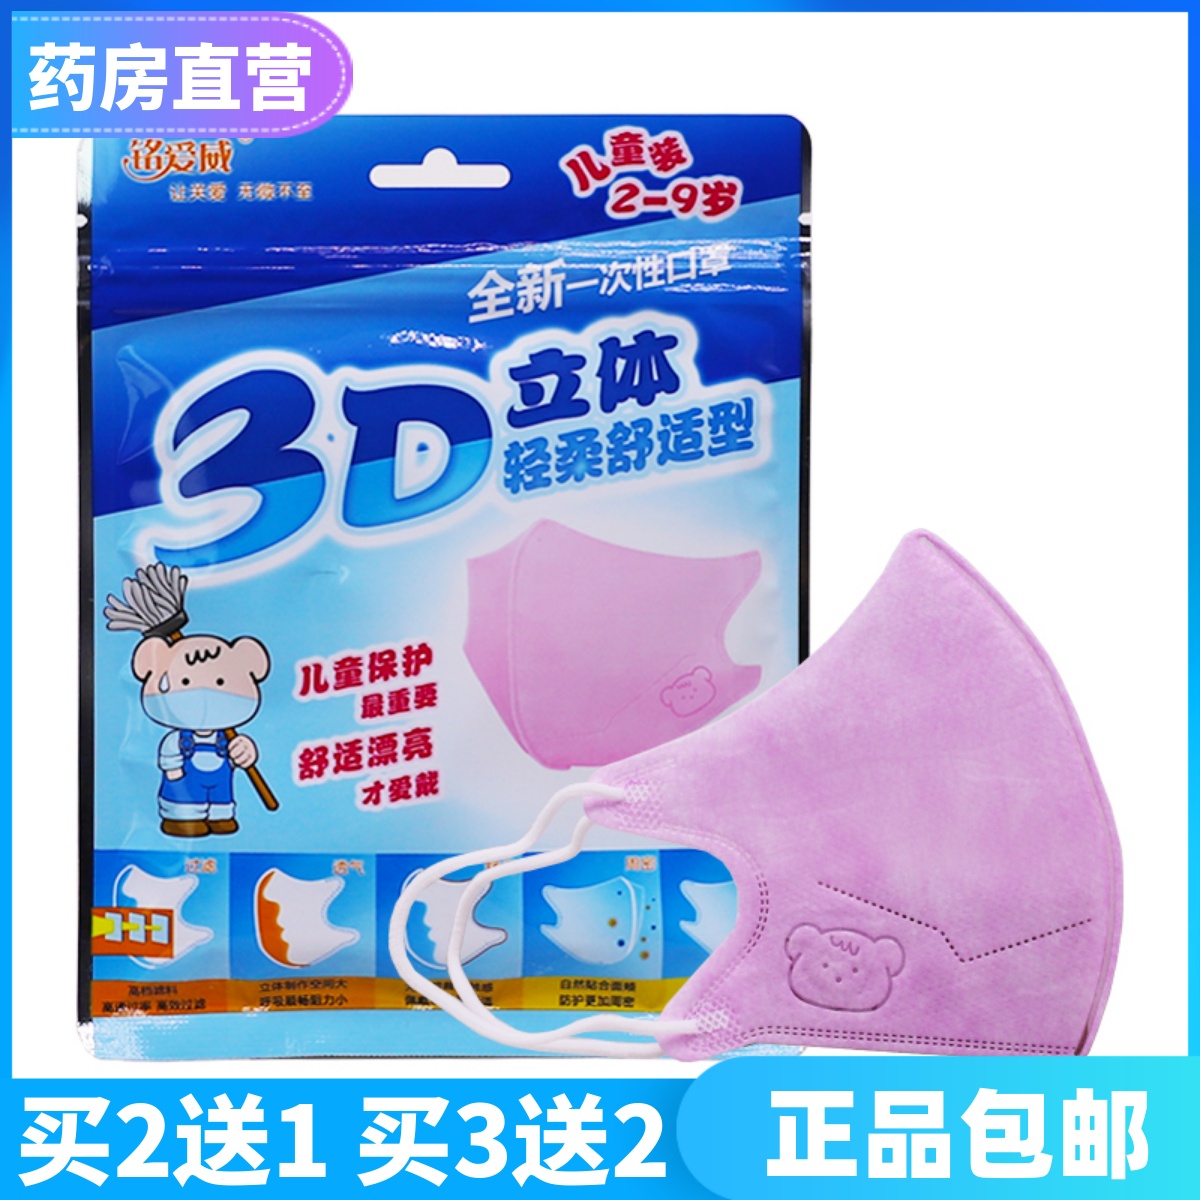 铭爱威儿童3D立体一次性口罩轻柔舒适粉色5片/包买2送1包正品包邮